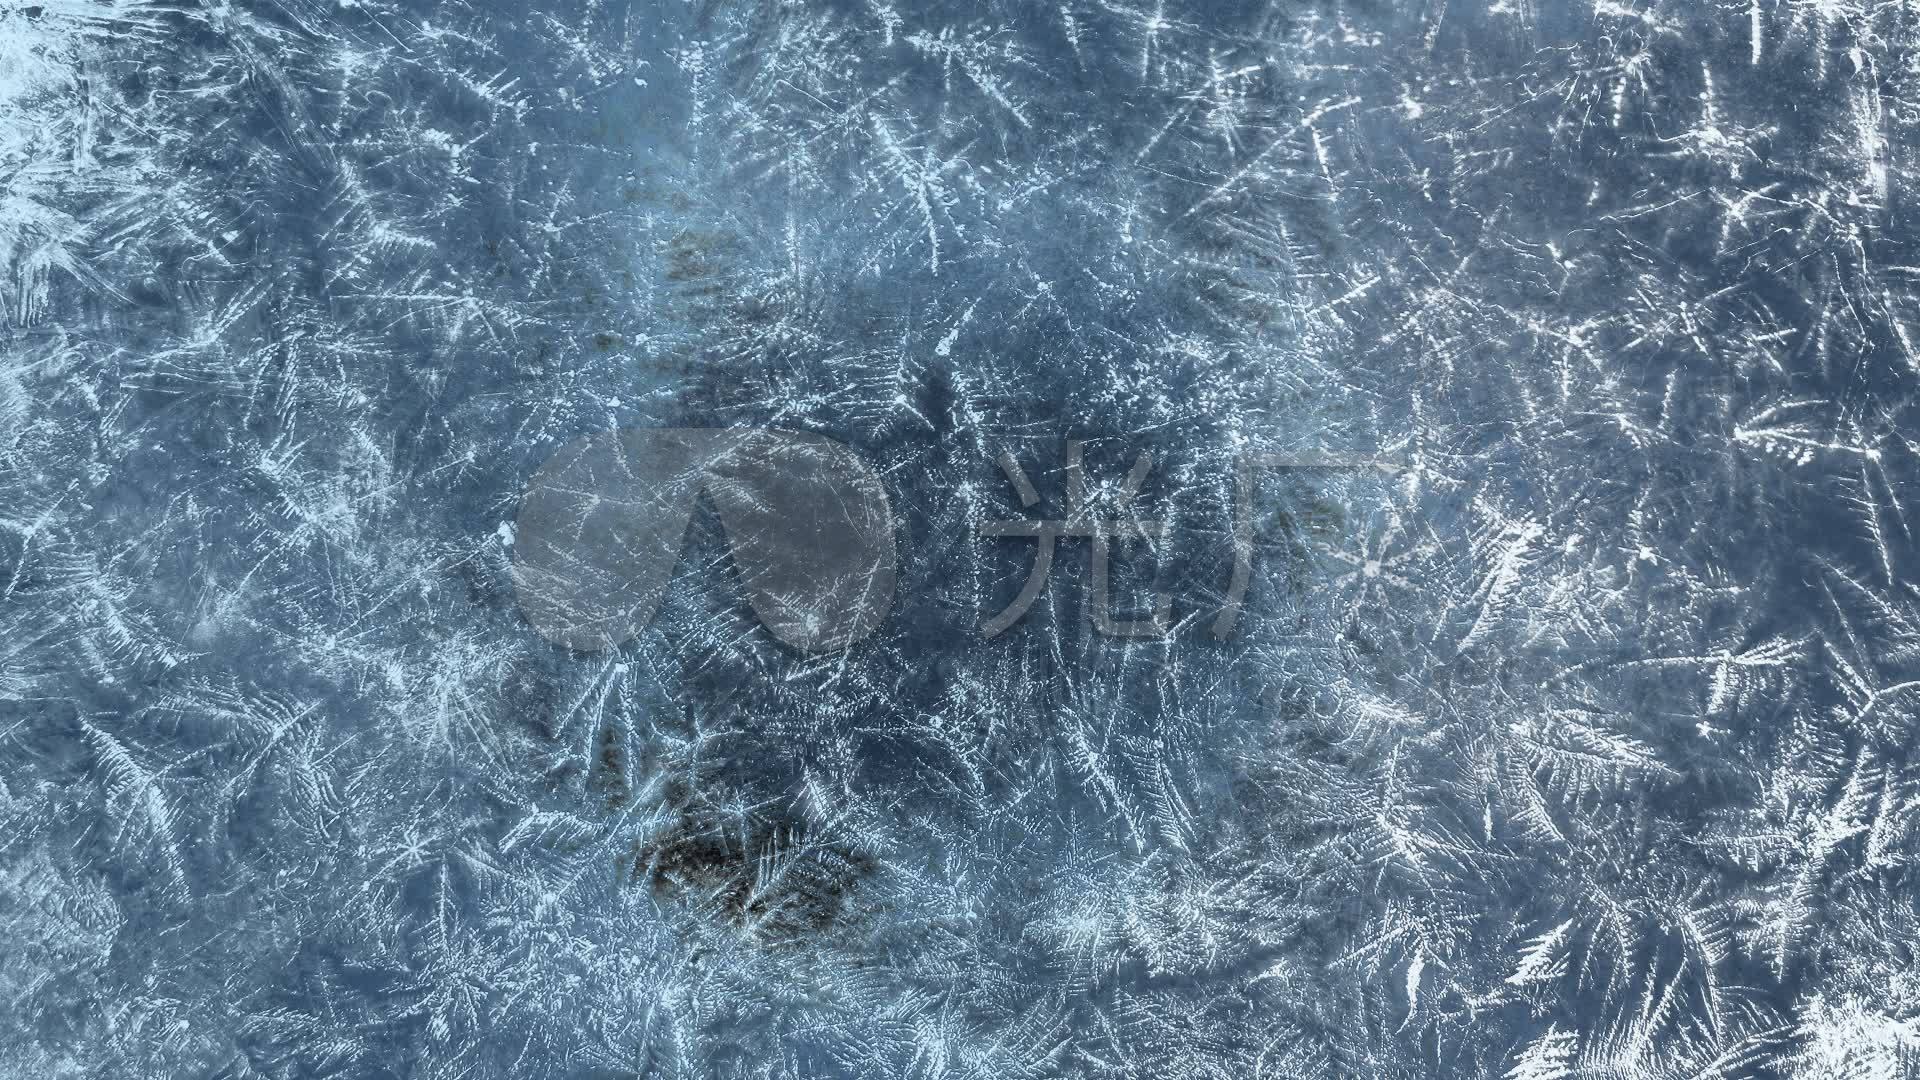 寒冷冰封的湖面图片 - 25H.NET壁纸库